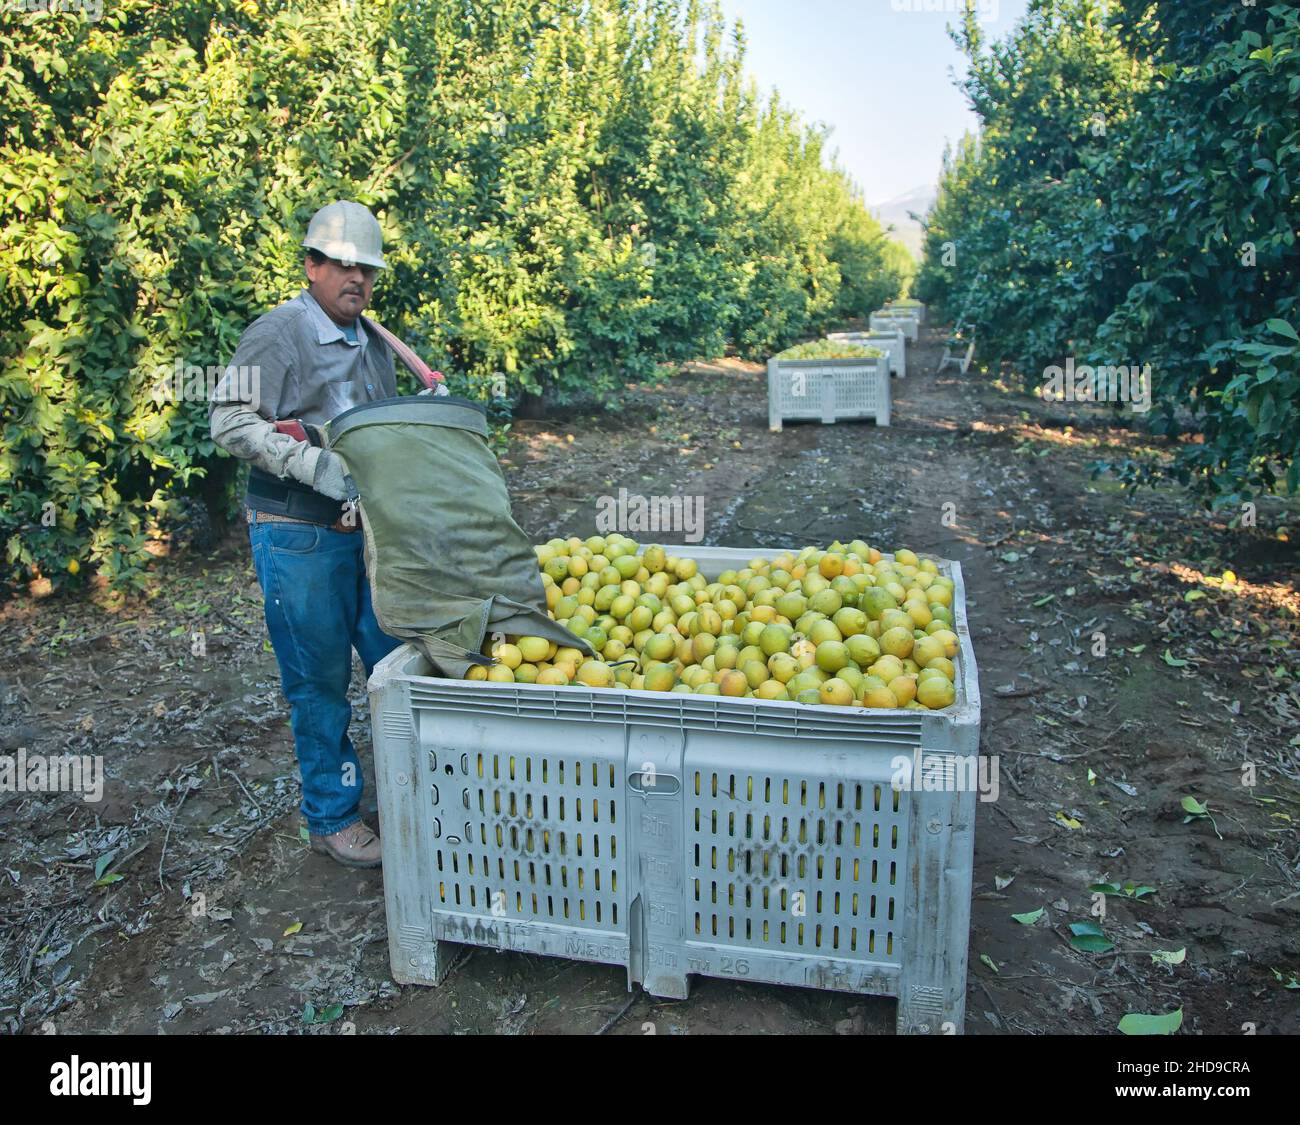 Lemon Harvest, hispano, trabajador depositando limones cosechados en el contenedor de transporte 'Citrus limon', luz de la mañana temprano, California, Foto de stock